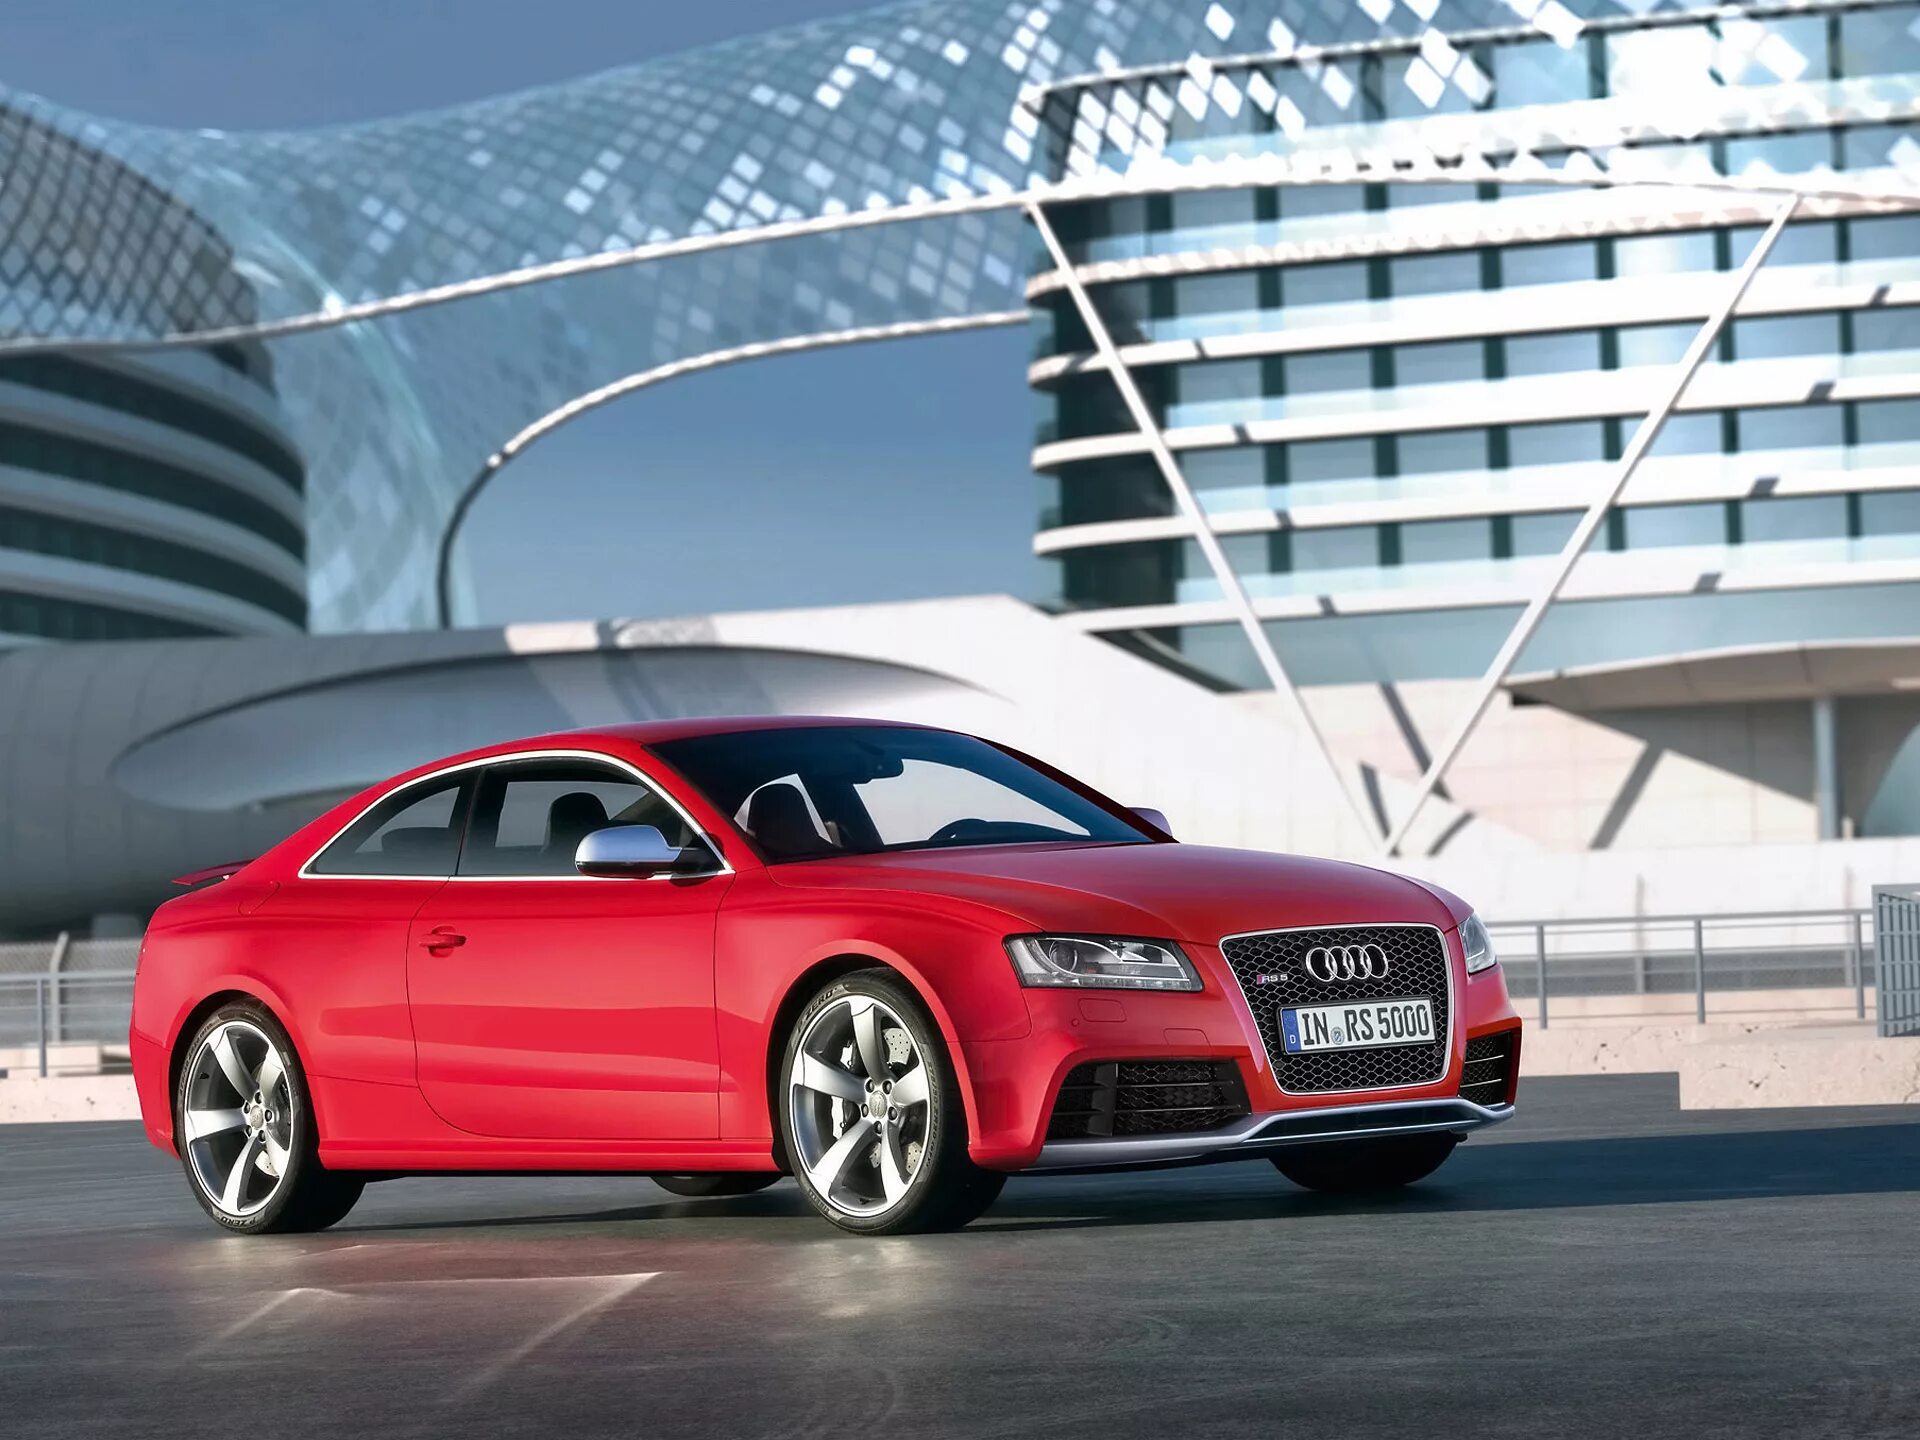 Ауди аск. Audi rs5 2010. Ауди рс5. Ауди рс5 2023. "Audi" "RS 5" "2010" I.